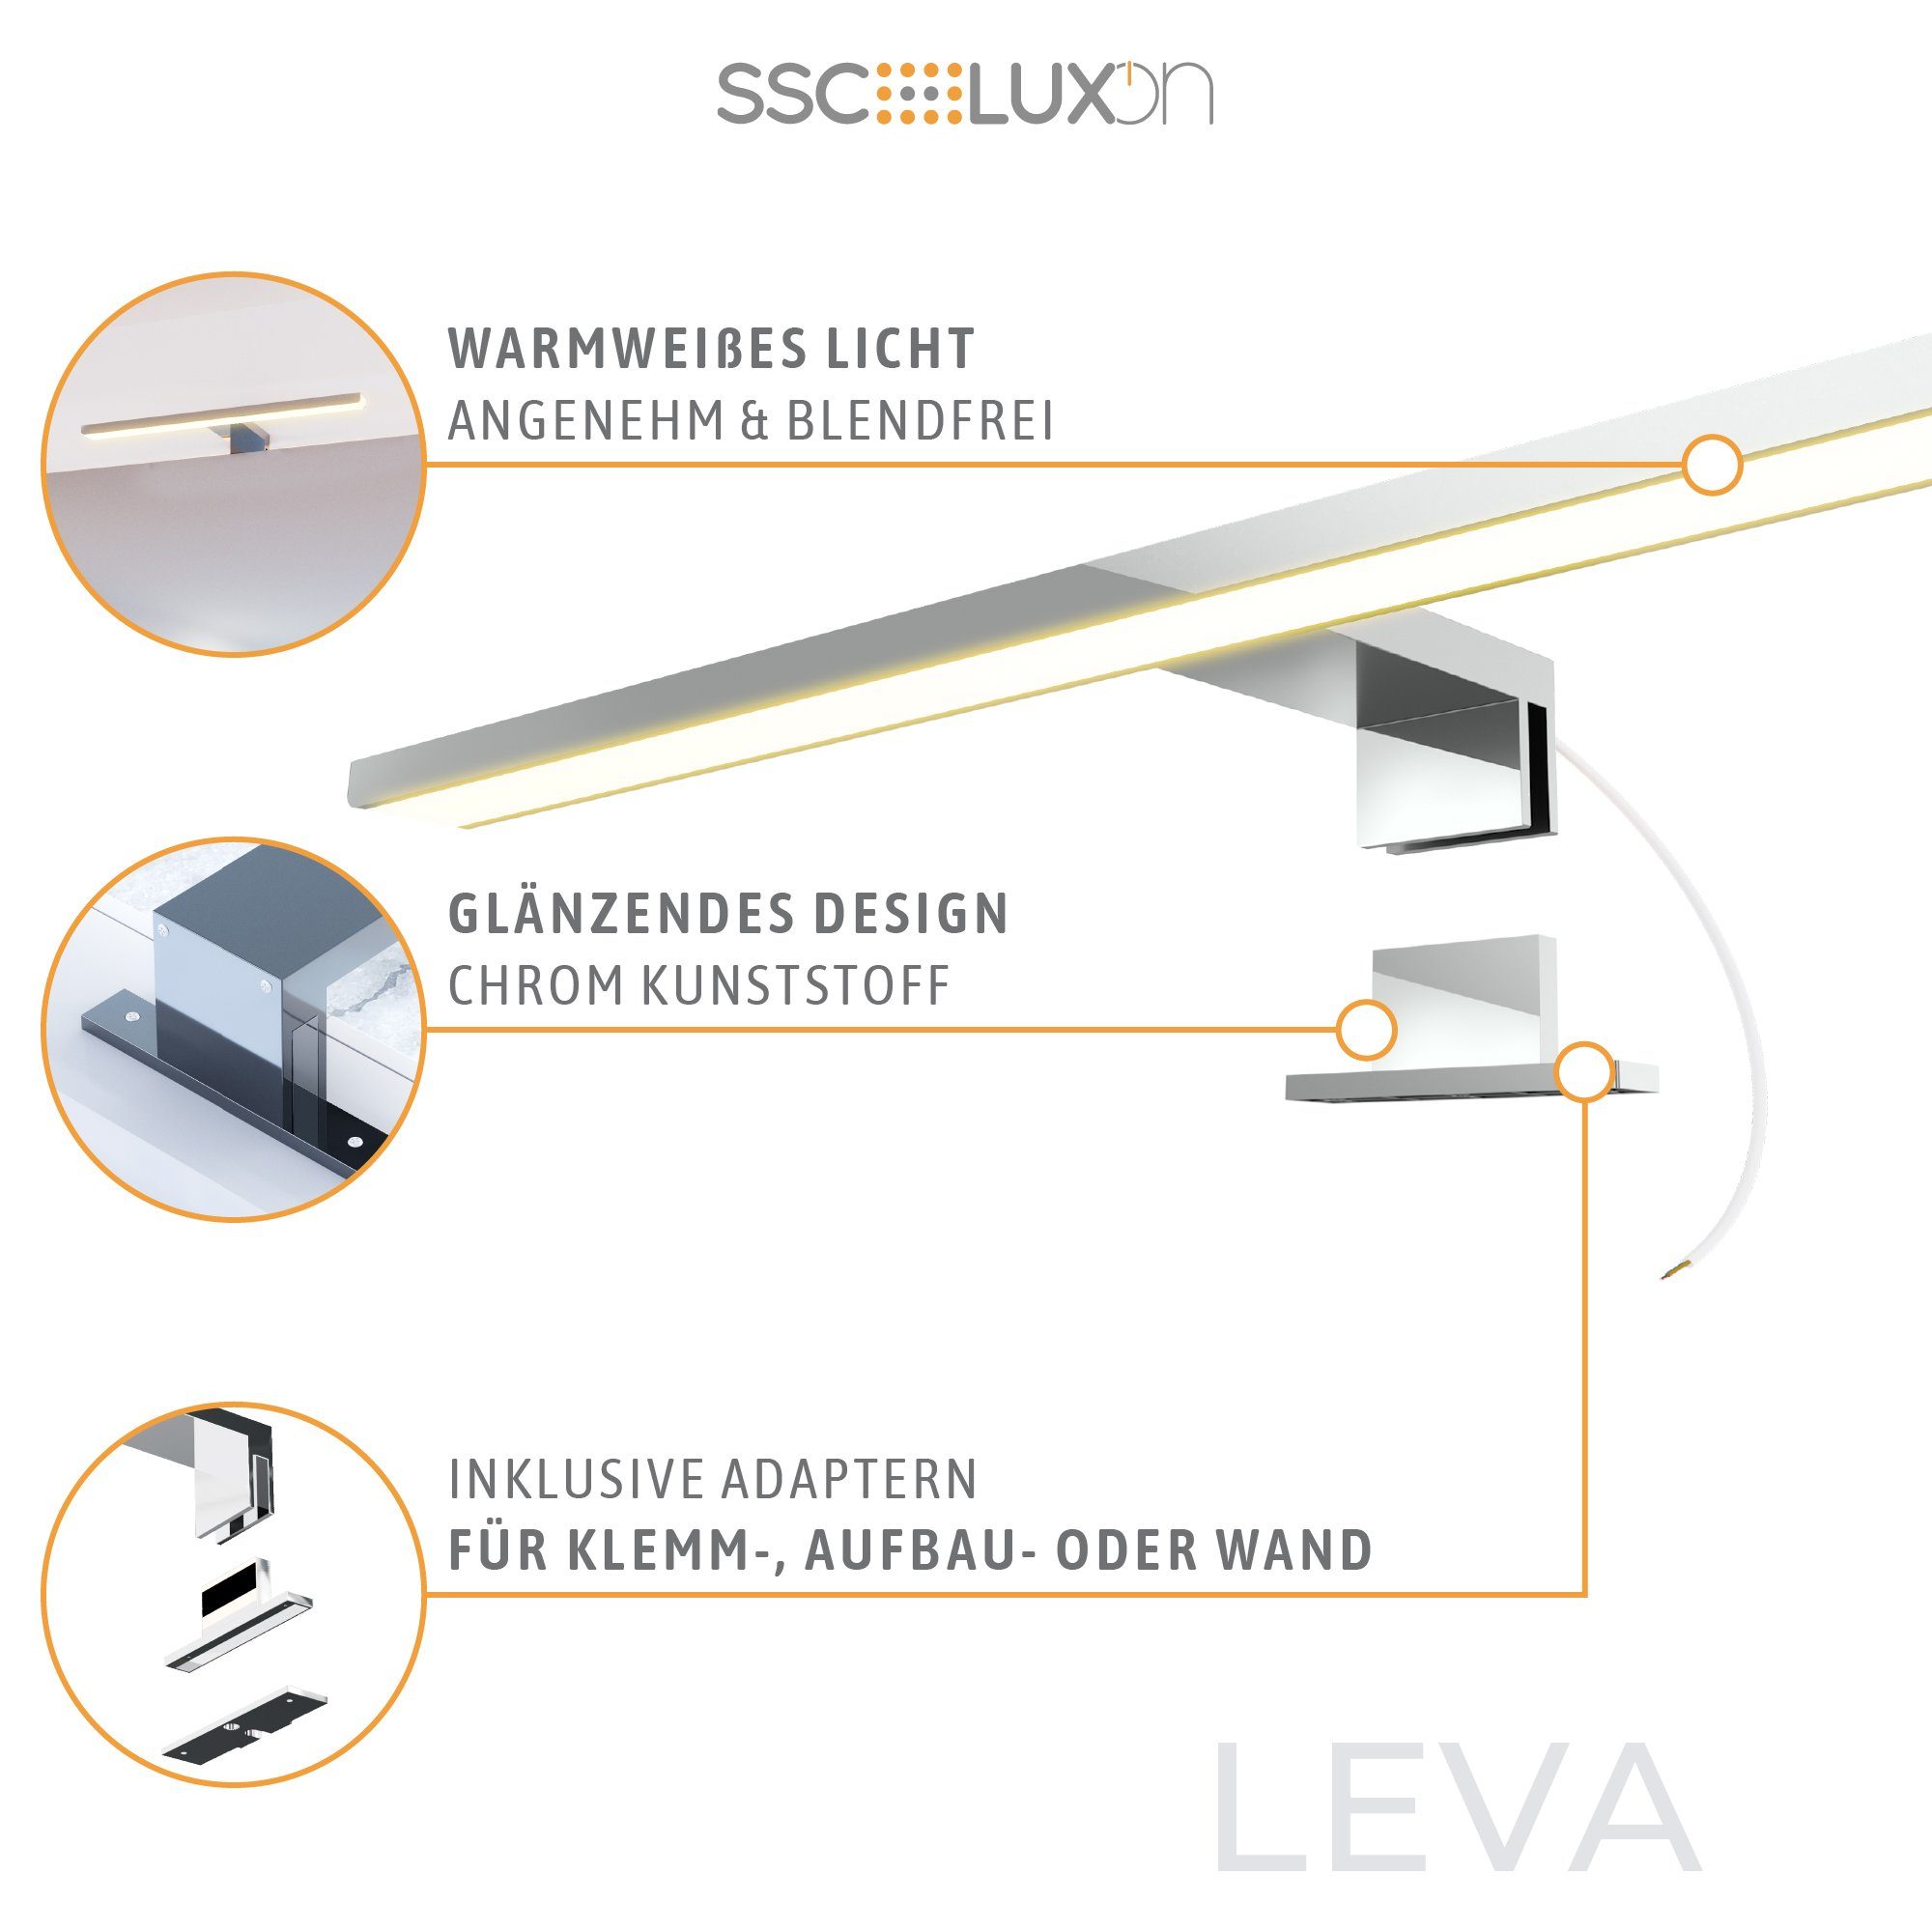 SSC-LUXon LED warmweiss 230V LEVA LED 9W Spiegelleuchte 3-in-1 Bad Bilderleuchte Warmweiß 50cm Design IP44